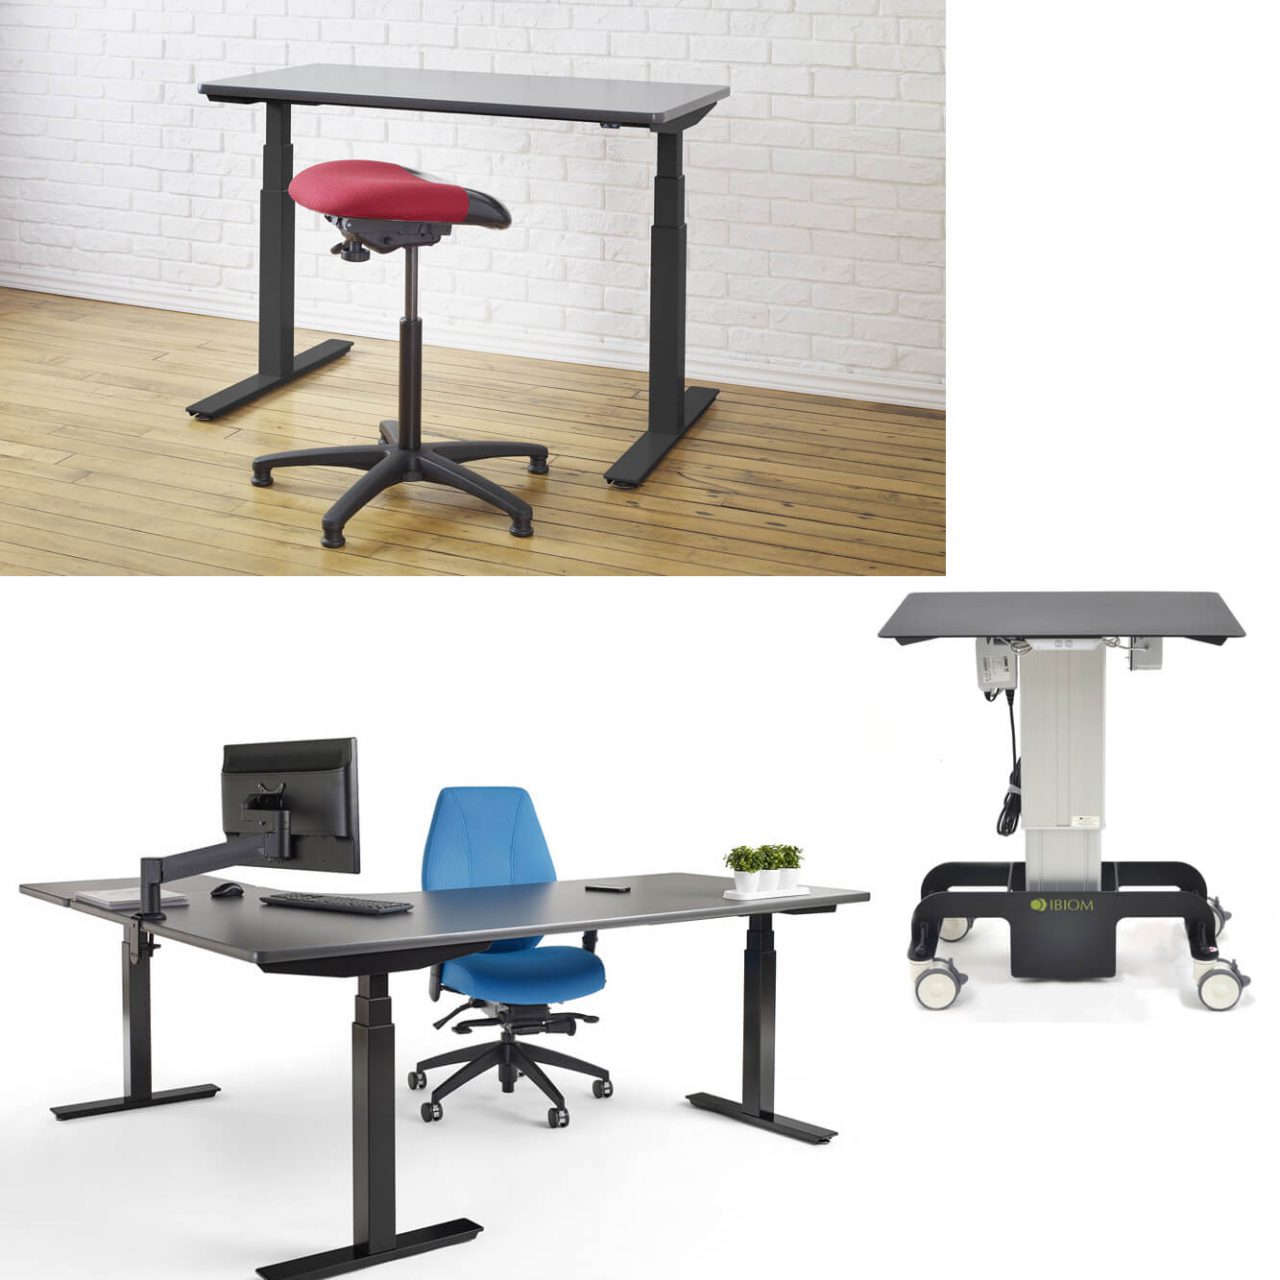 Adjustable desk for sit-stand work